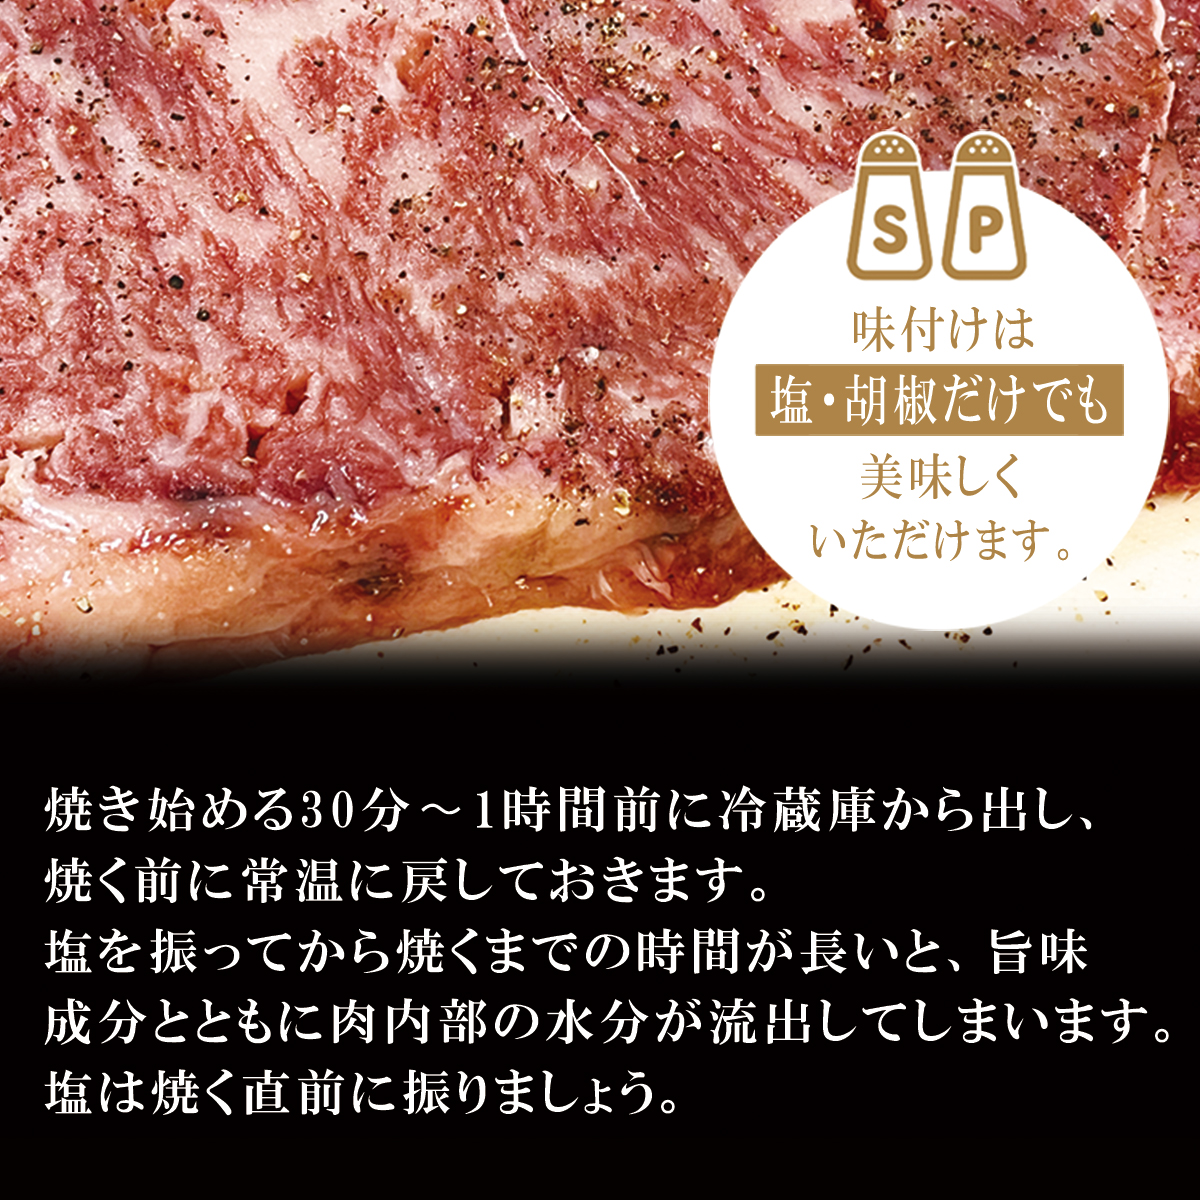 【送料無料】神戸牛ロース ステーキ用 200ｇ×2枚画像